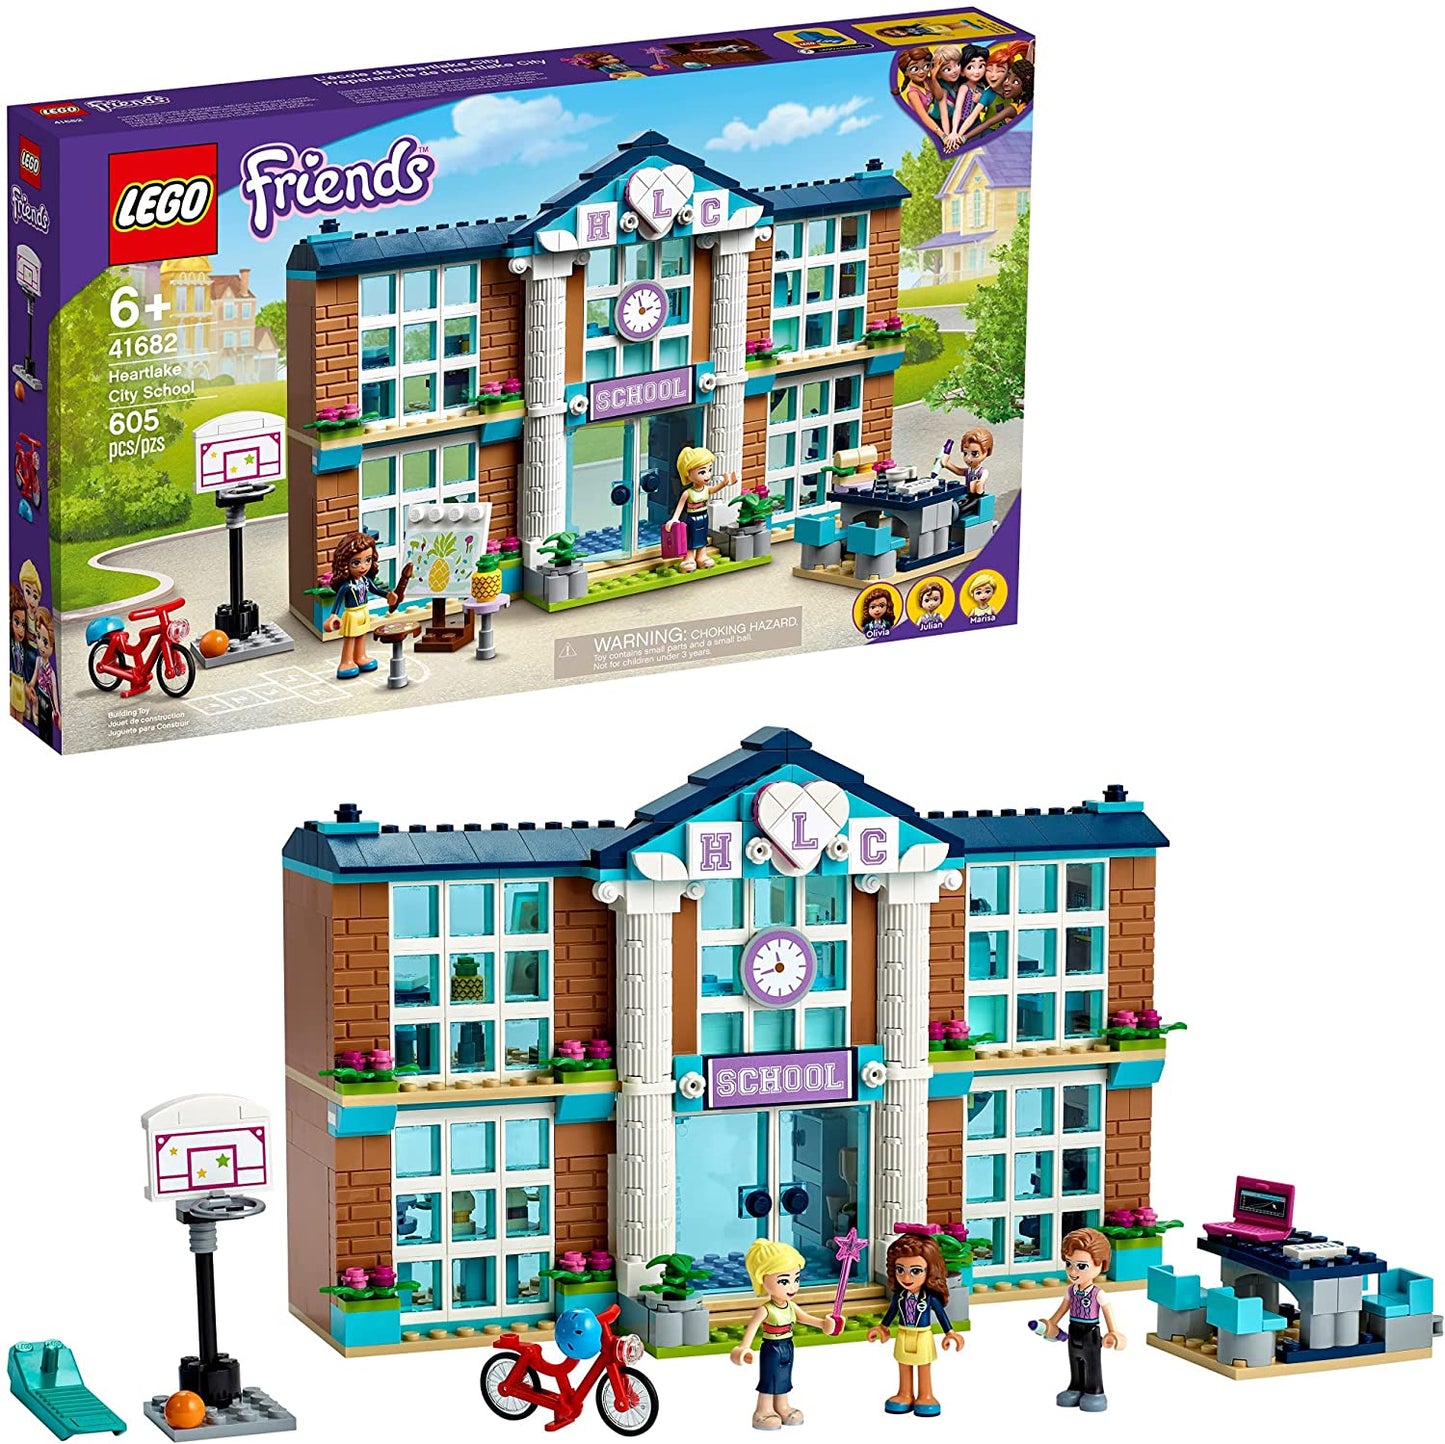 LEGO Friends Heartlake City School - 605 Pieces (41682)